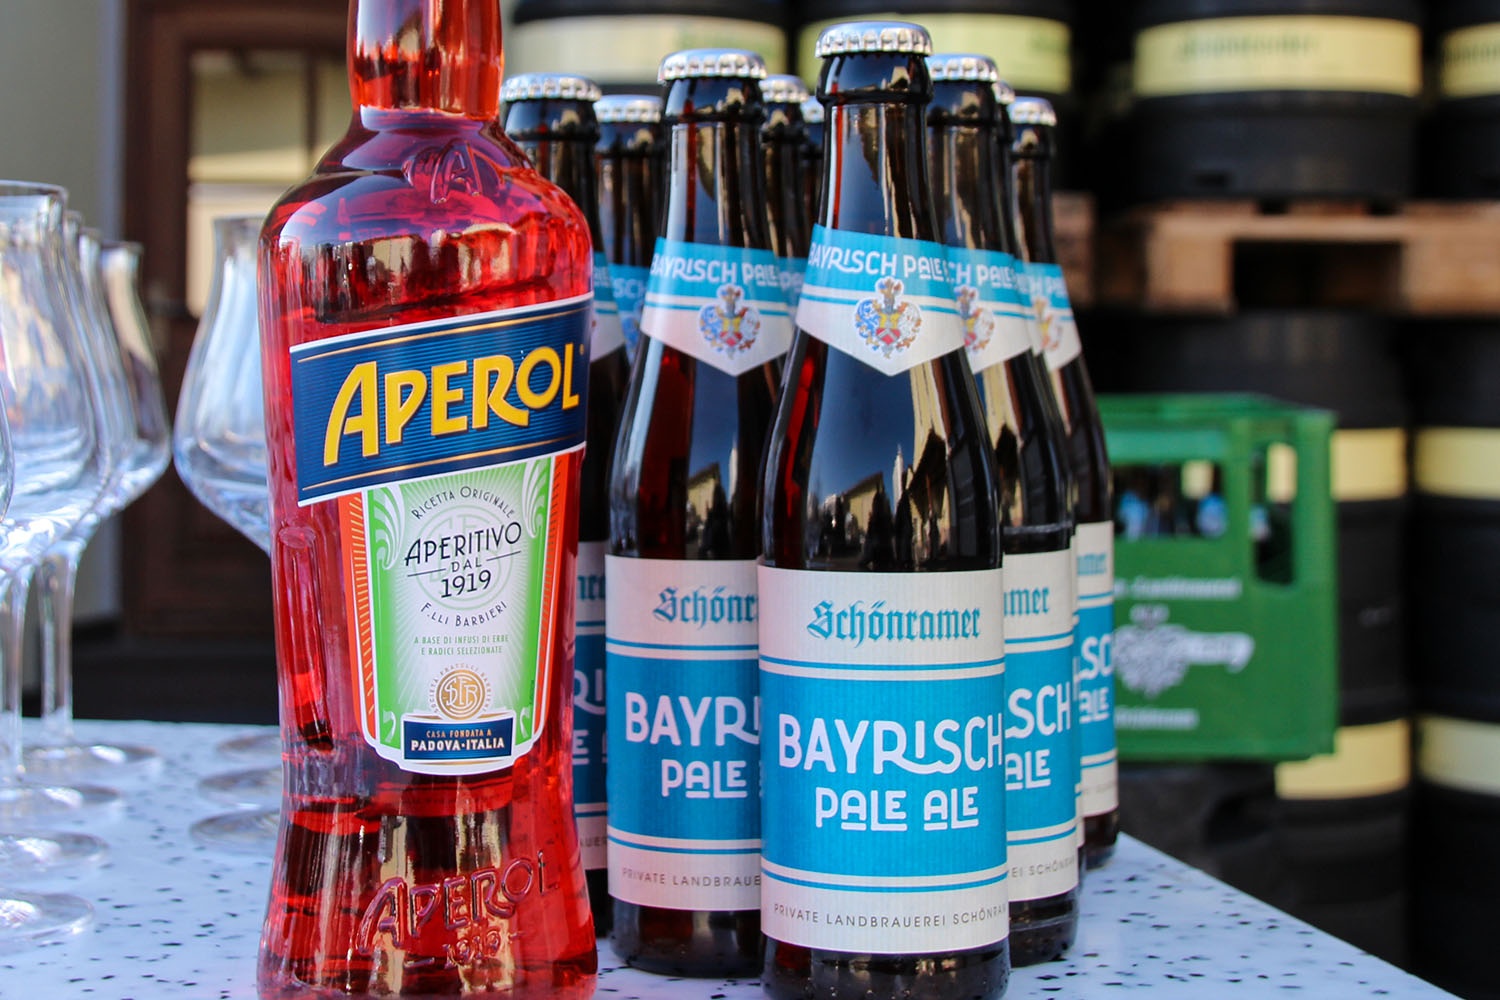 Bayrisch Pale Ale mit Aperol